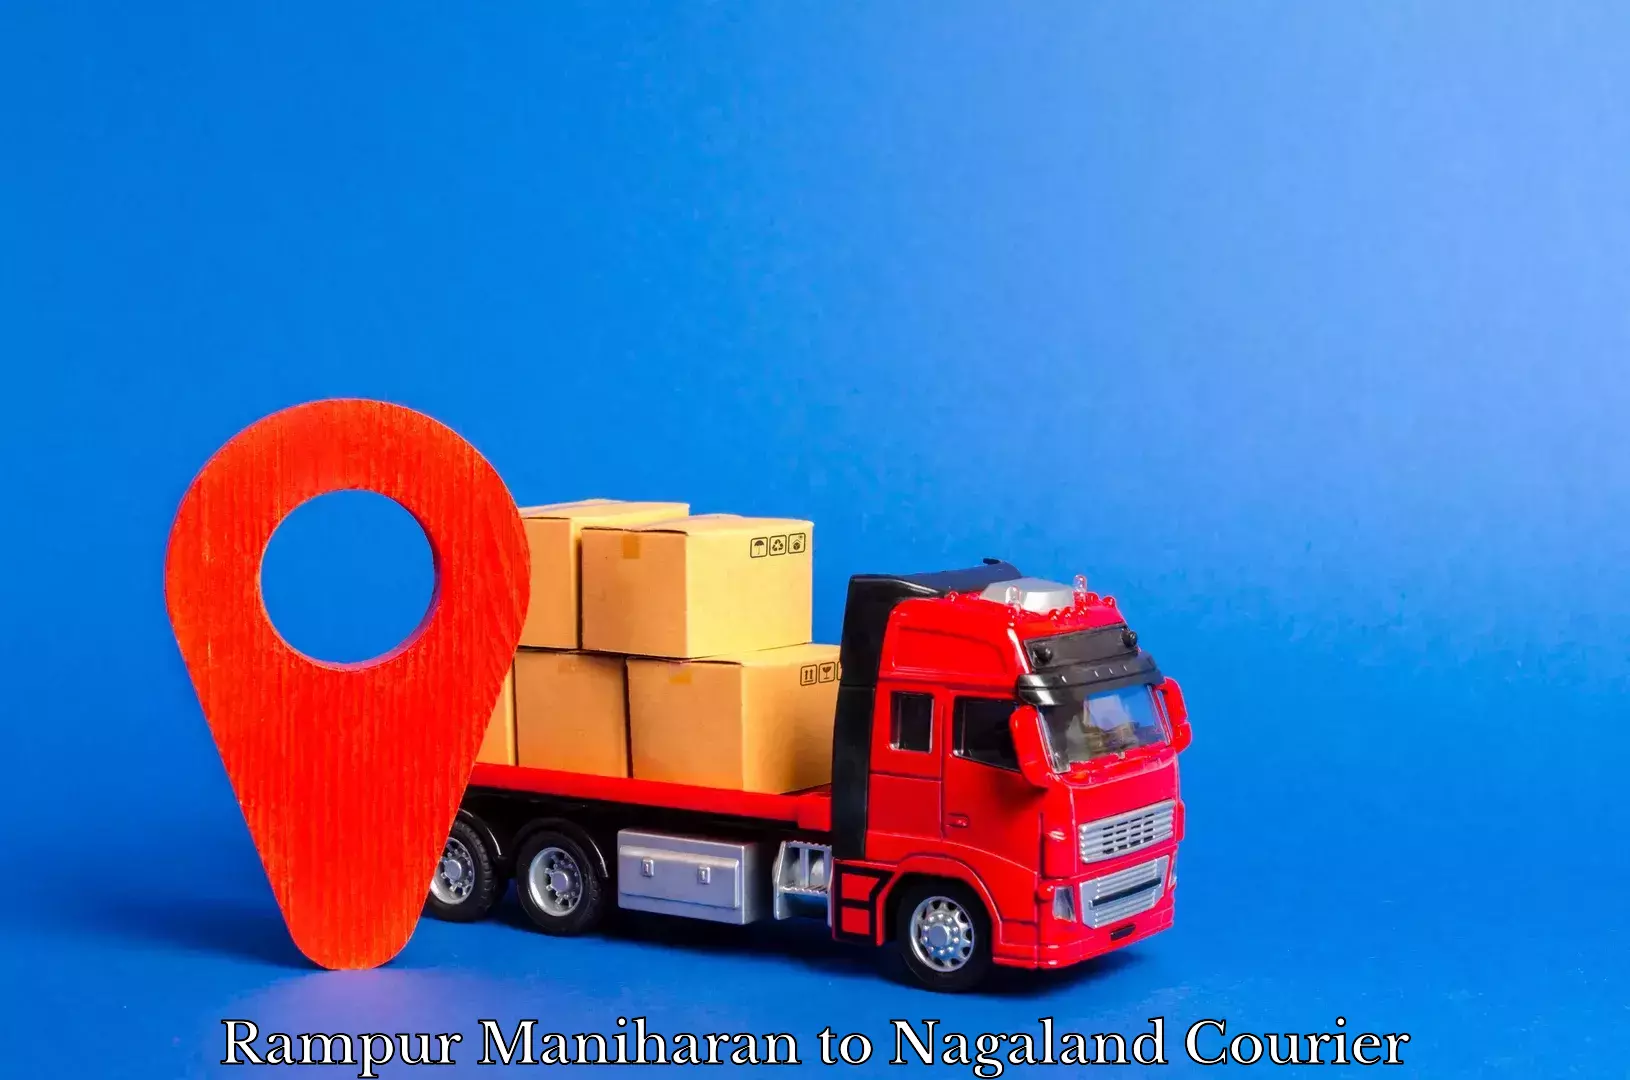 Global shipping networks Rampur Maniharan to Nagaland